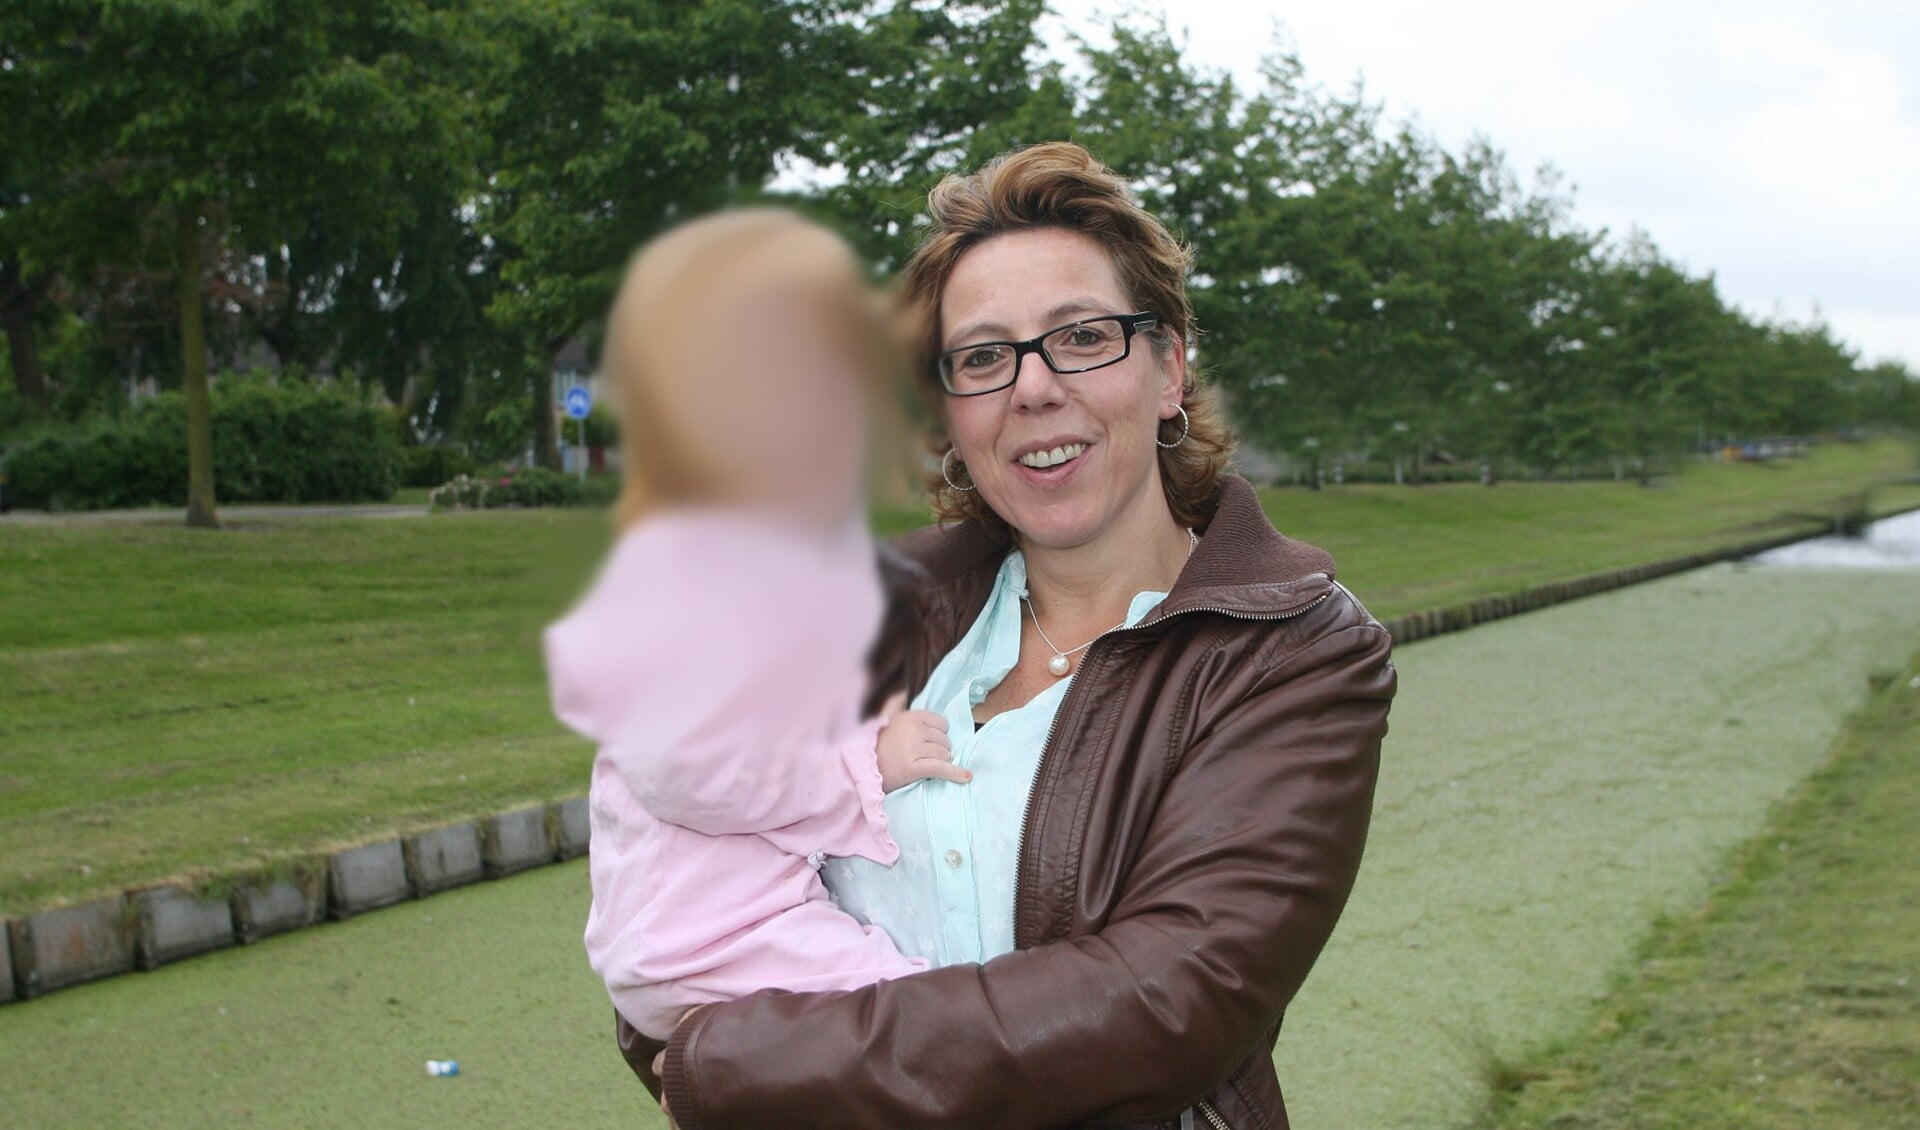 Wil van Balen zette Brenda met de 2-jarige peuter op de foto. Vanwege de privacy is het meisje onherkenbaar gemaakt.